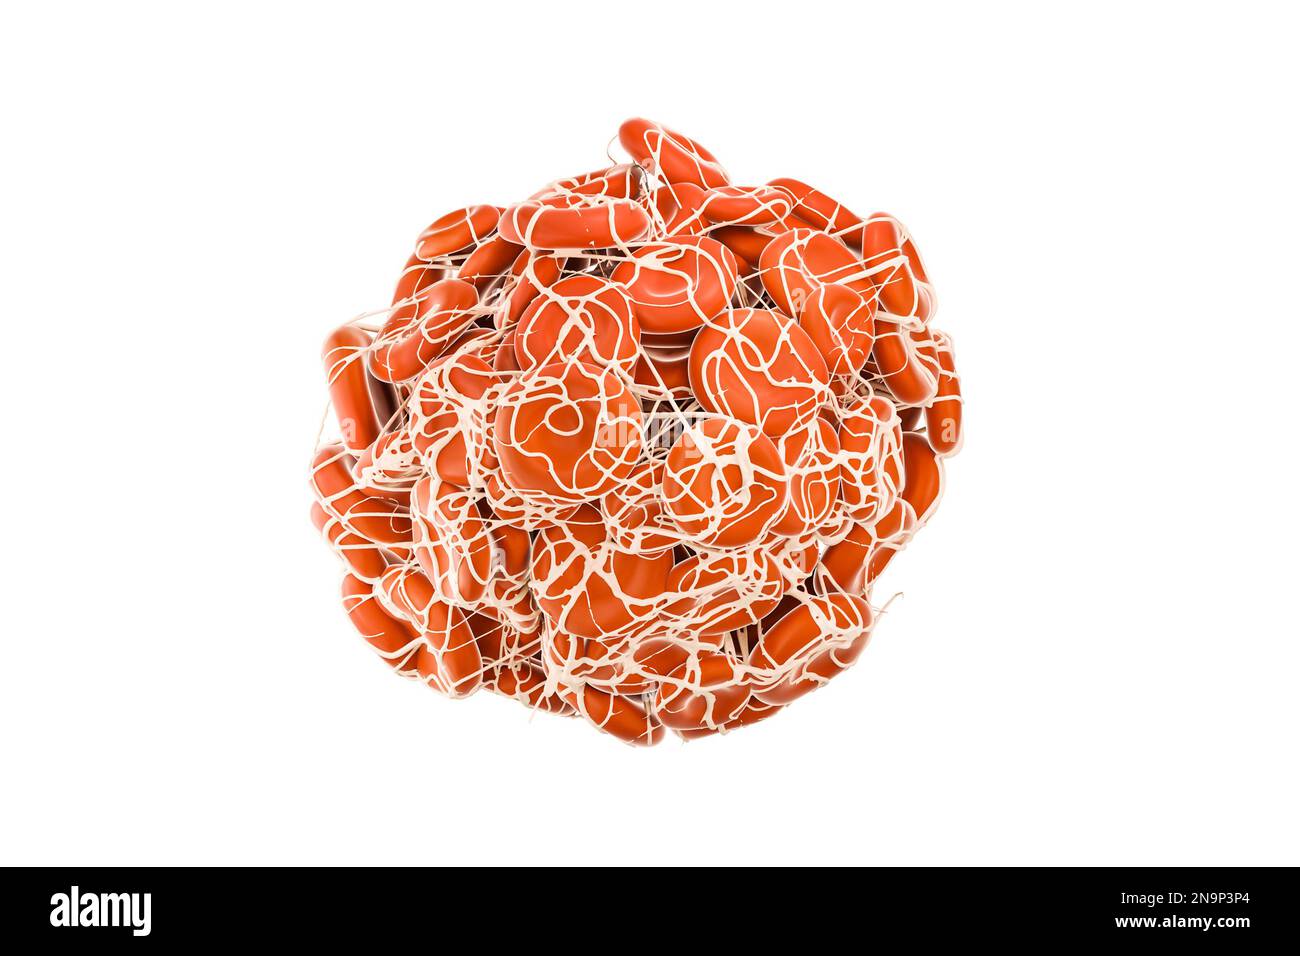 Coagulo di sangue o trombo con fibrina isolata su sfondo bianco 3D che rende l'illustrazione. malattie cardiovascolari, medico, biologia, scienza, salute Foto Stock